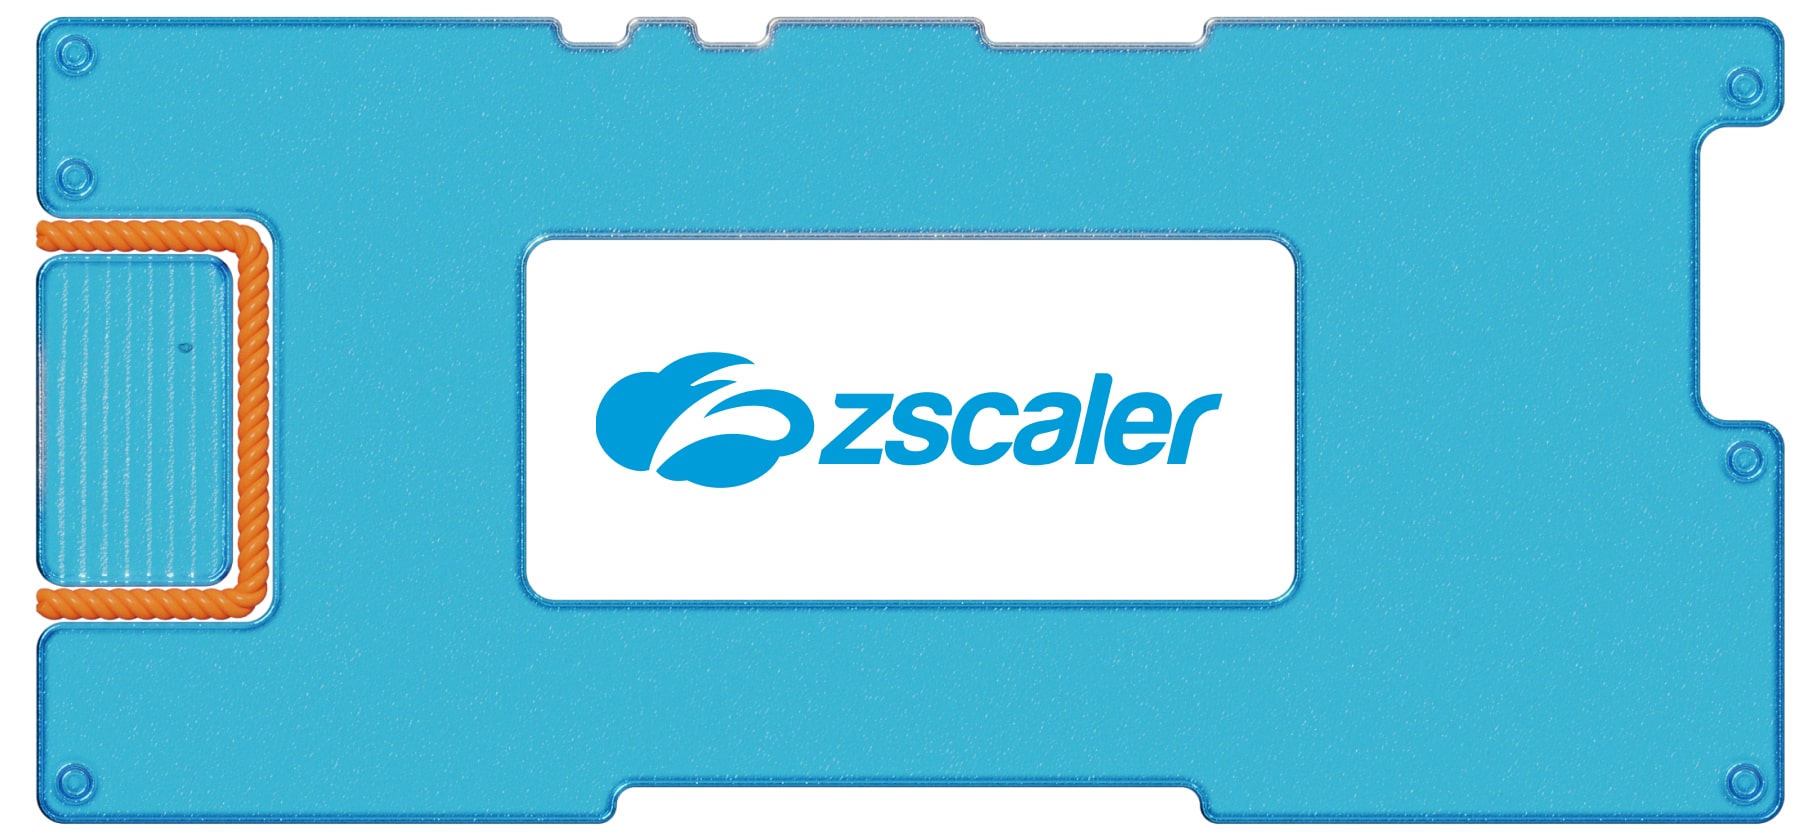 Инвестидея: Zscaler, потому что очень нагло